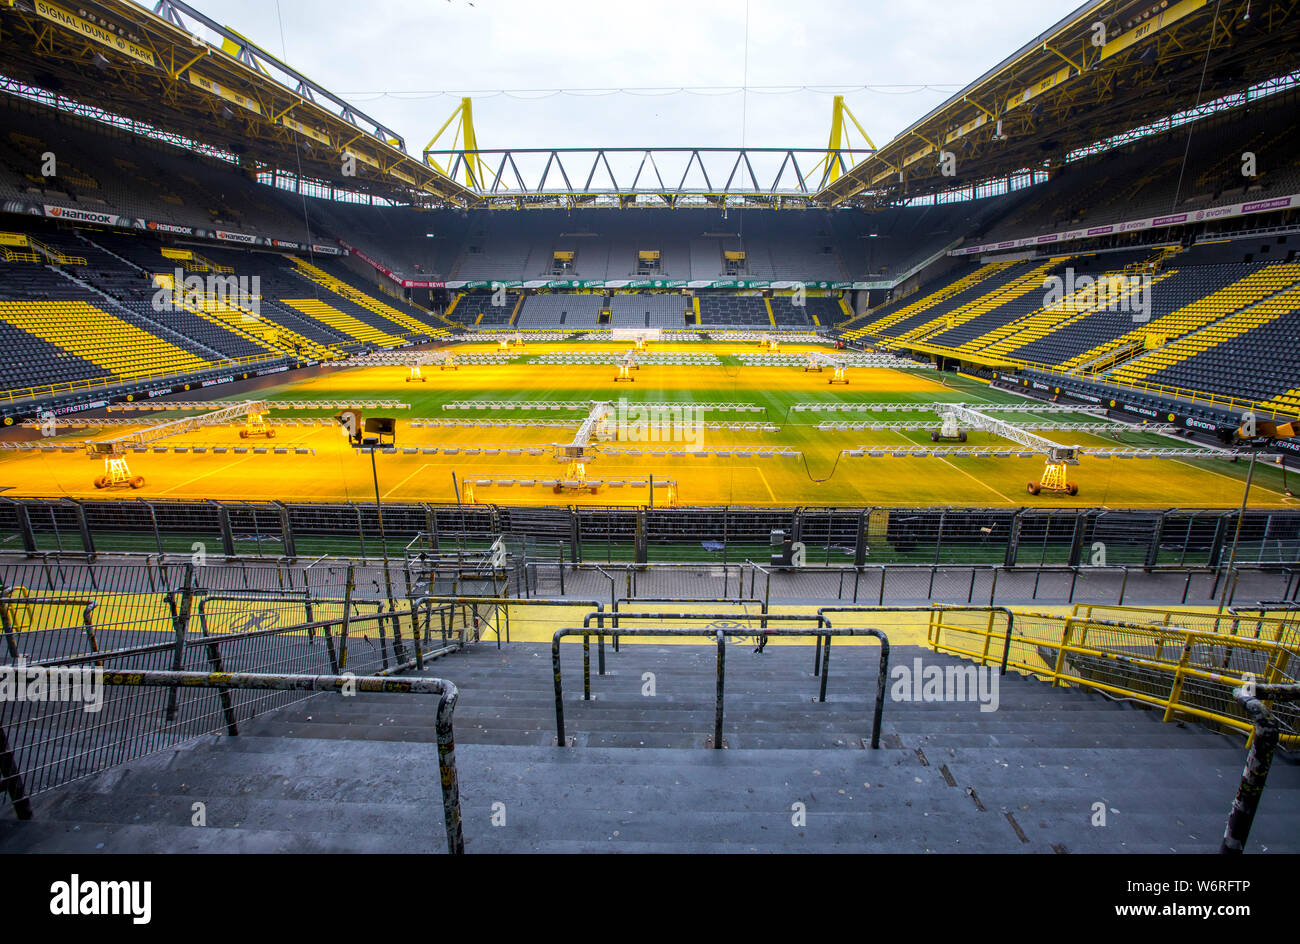 Westfalenstadion Signal-Iduna-Park, el estadio de fútbol de BVB Borussia Dortmund, el césped del campo está iluminada con lámparas especiales, para el cuidado del césped Foto de stock